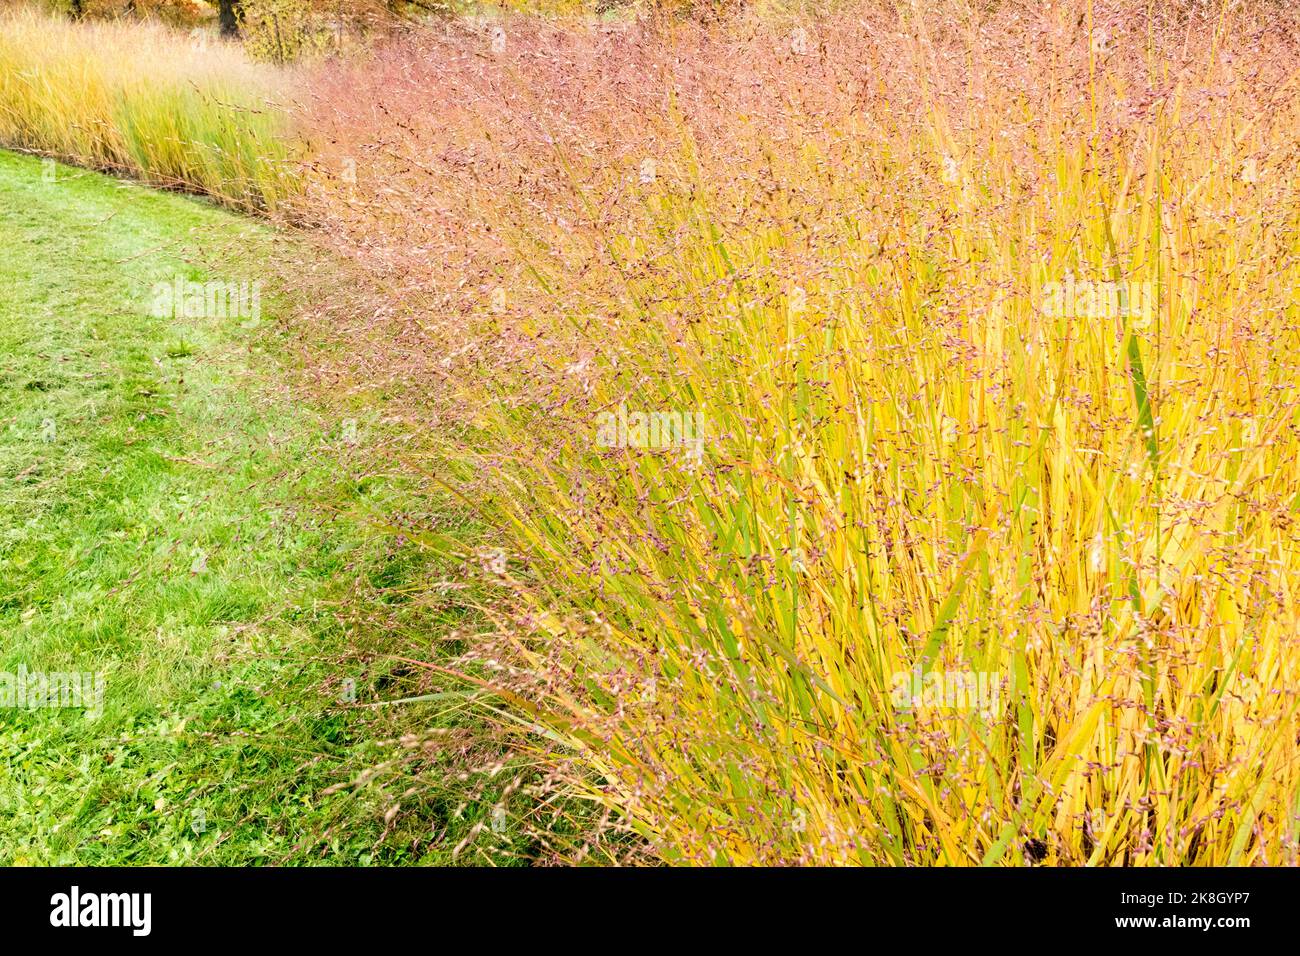 Herbstfarben von switchgrass Panicum virgatum grenzt an den Rasen im Garten und das Bett mit höheren Gräsern Pflanzen vergilben Panicum 'strictum' Stockfoto